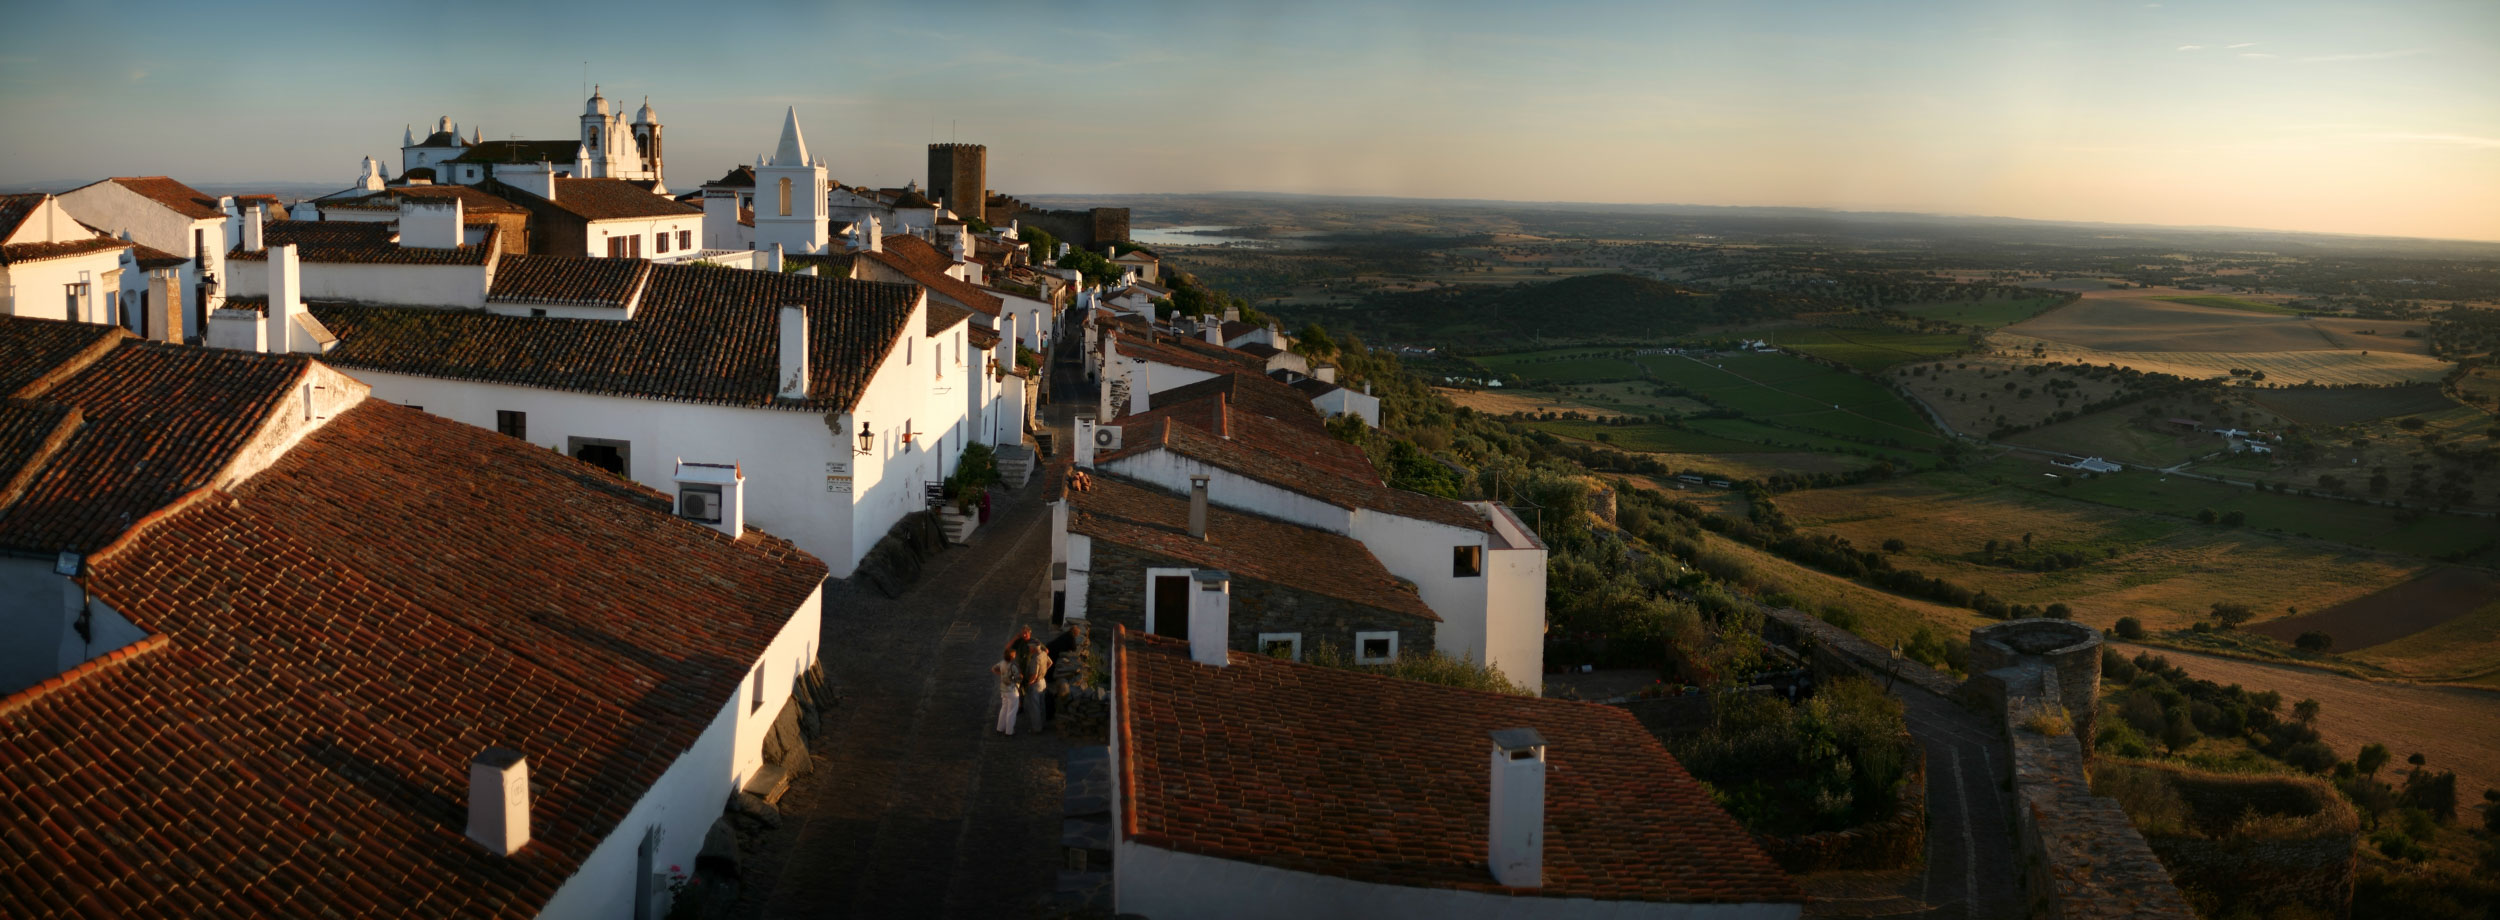 portugal-panoramic-town-1.jpg